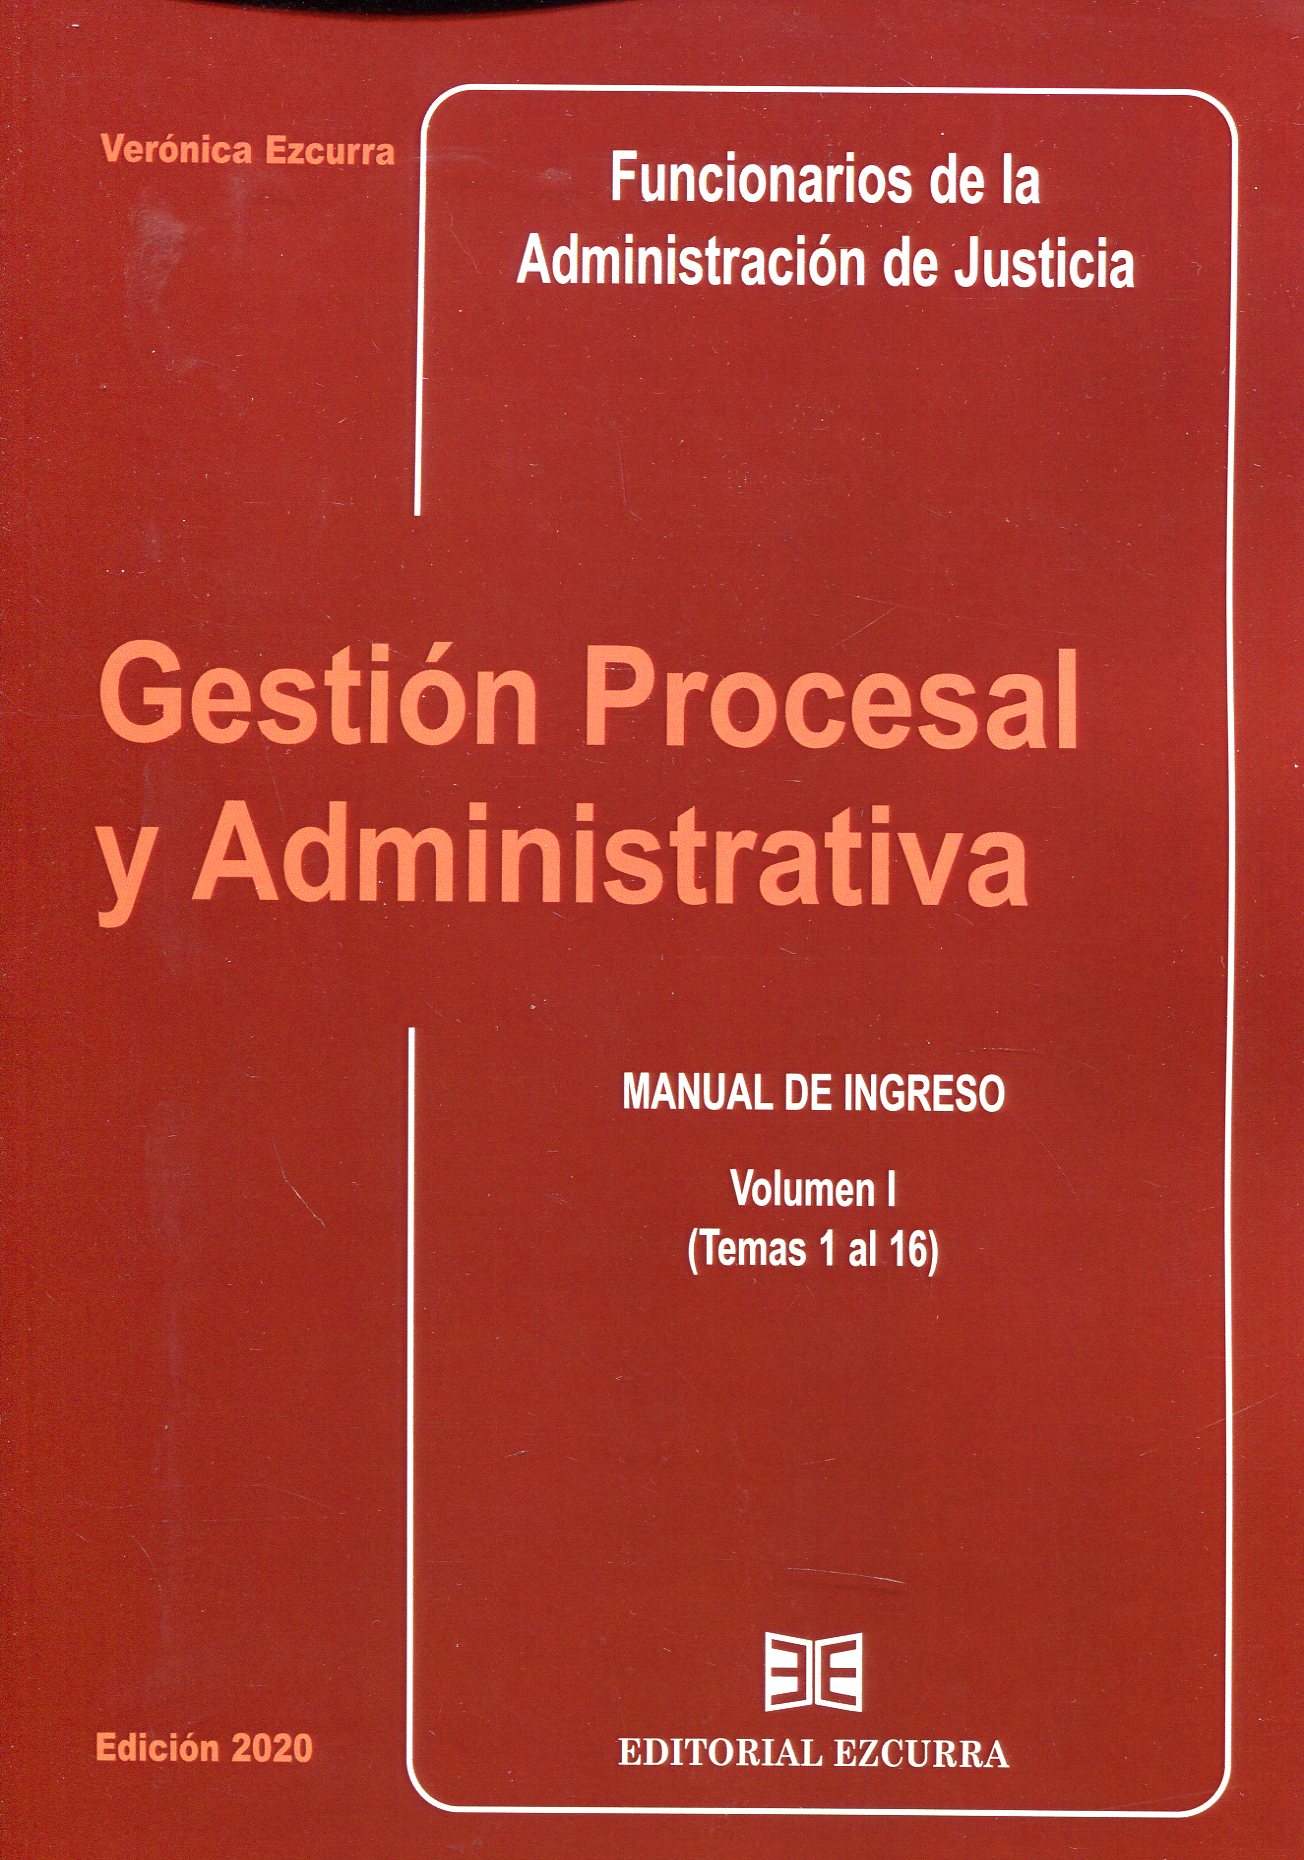 Gestion procesal y administrativa para Funcionarios de la Administración de Justicia. 9788416190591